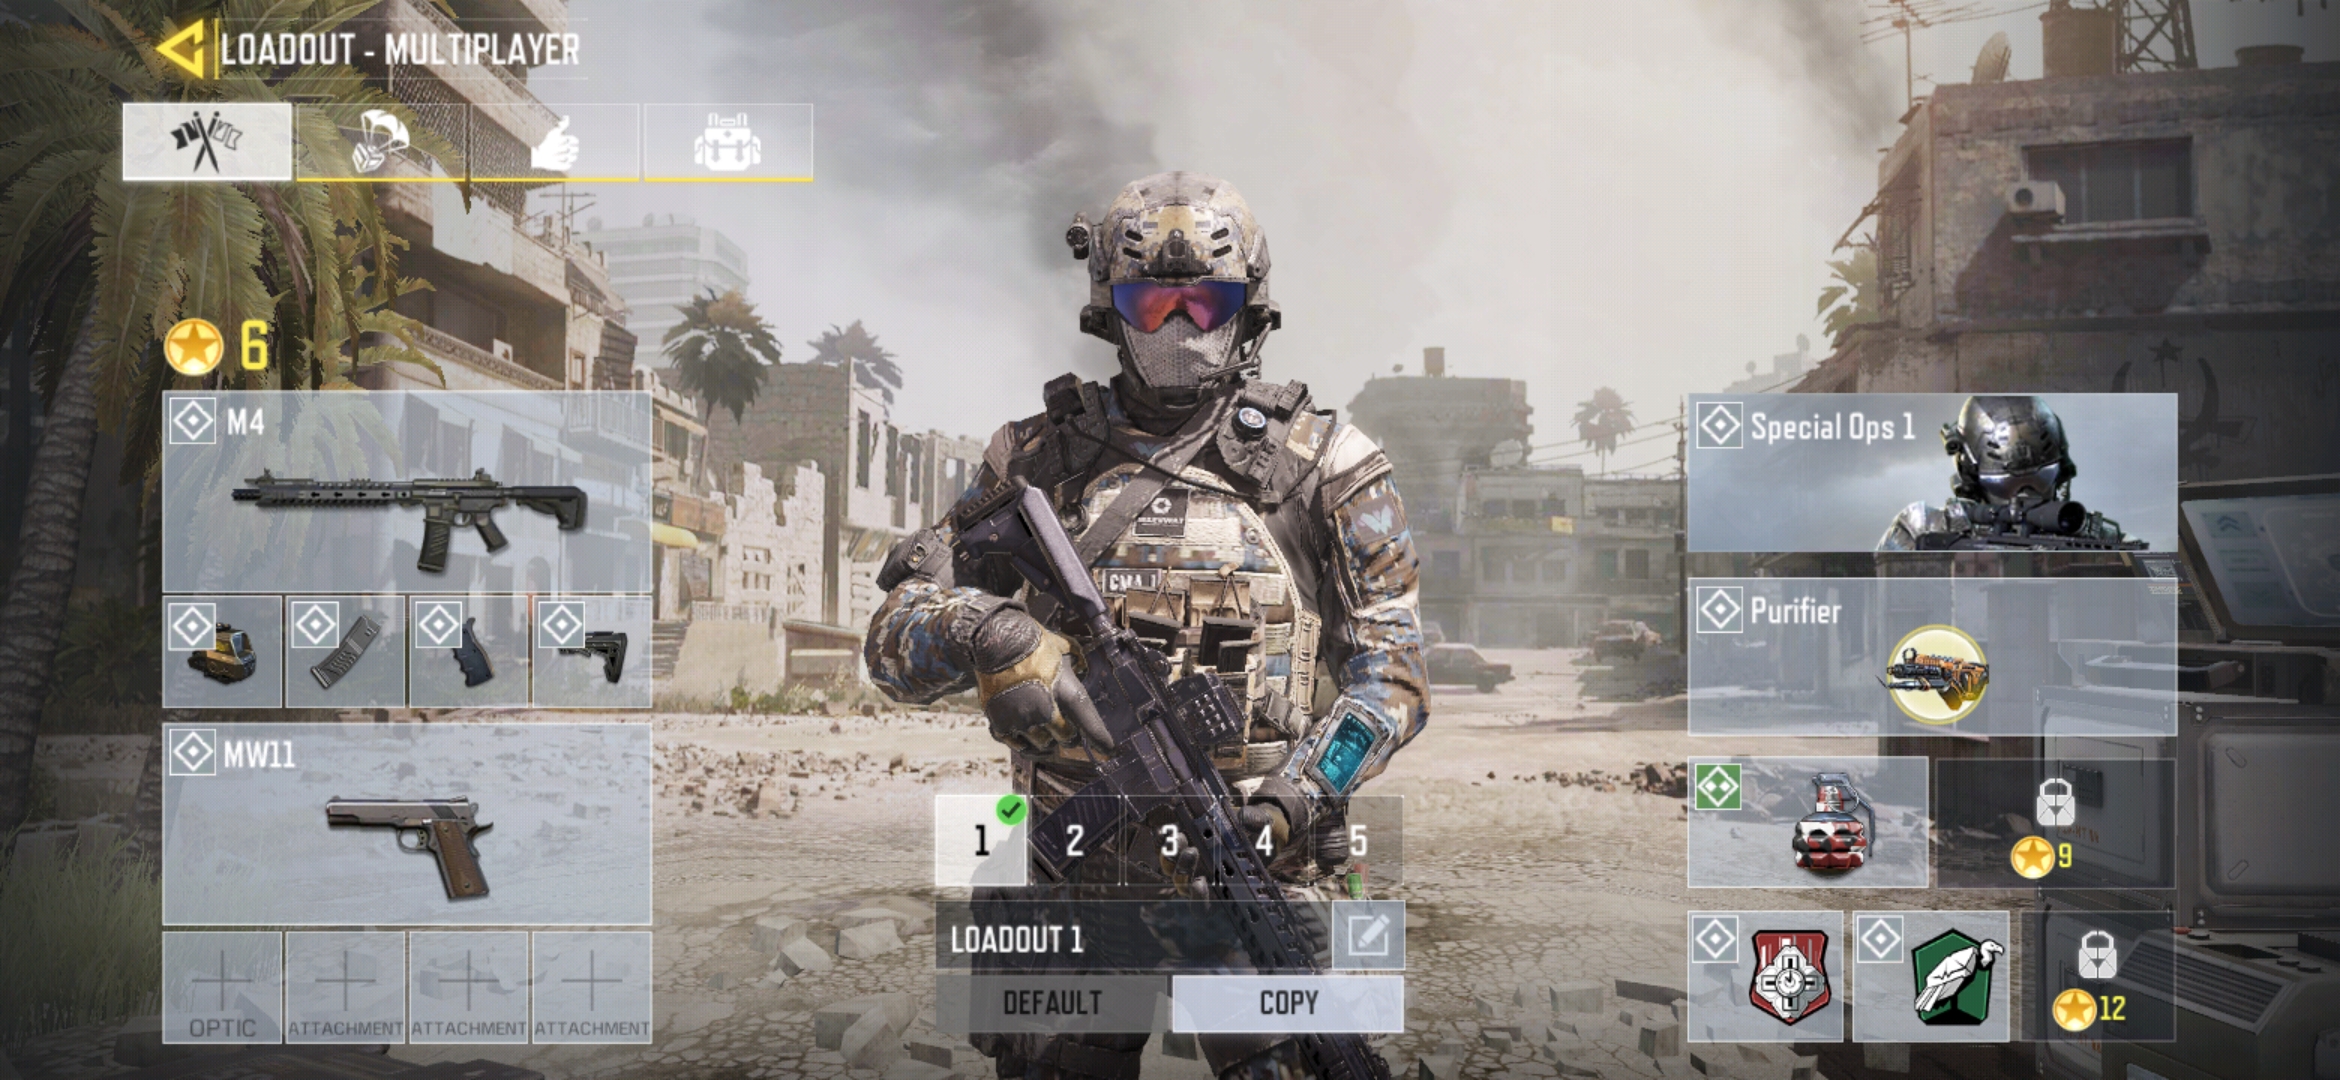 إطلاق لعبة Call of Duty: Mobile لجوالات أندرويد وآيفون مع "الباتل رويال" مدونة نظام أون لاين التقنية